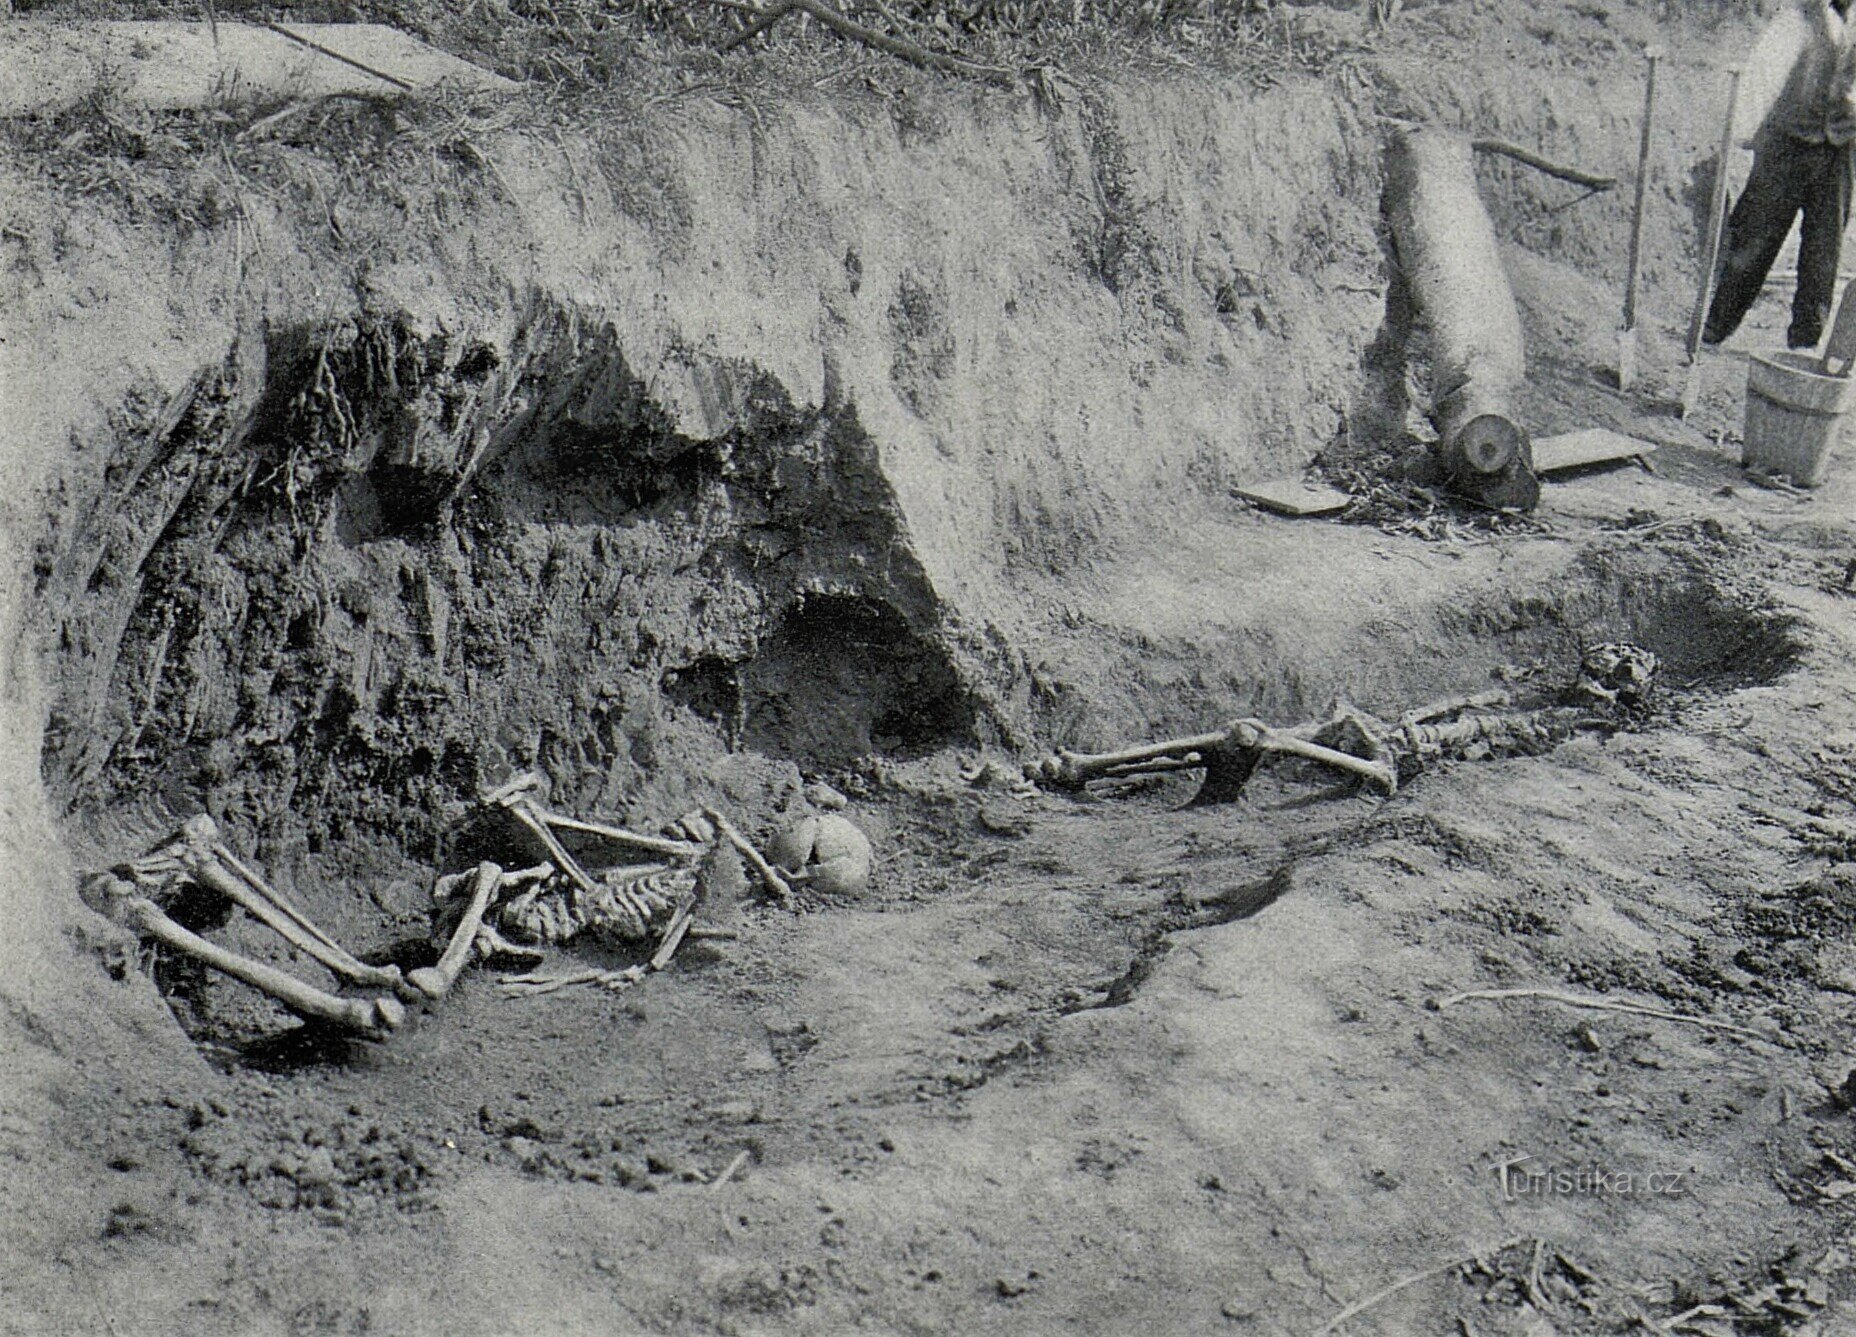 De ontdekking van skeletresten in een van de steenfabrieken in Svobodné Dvory (1909)